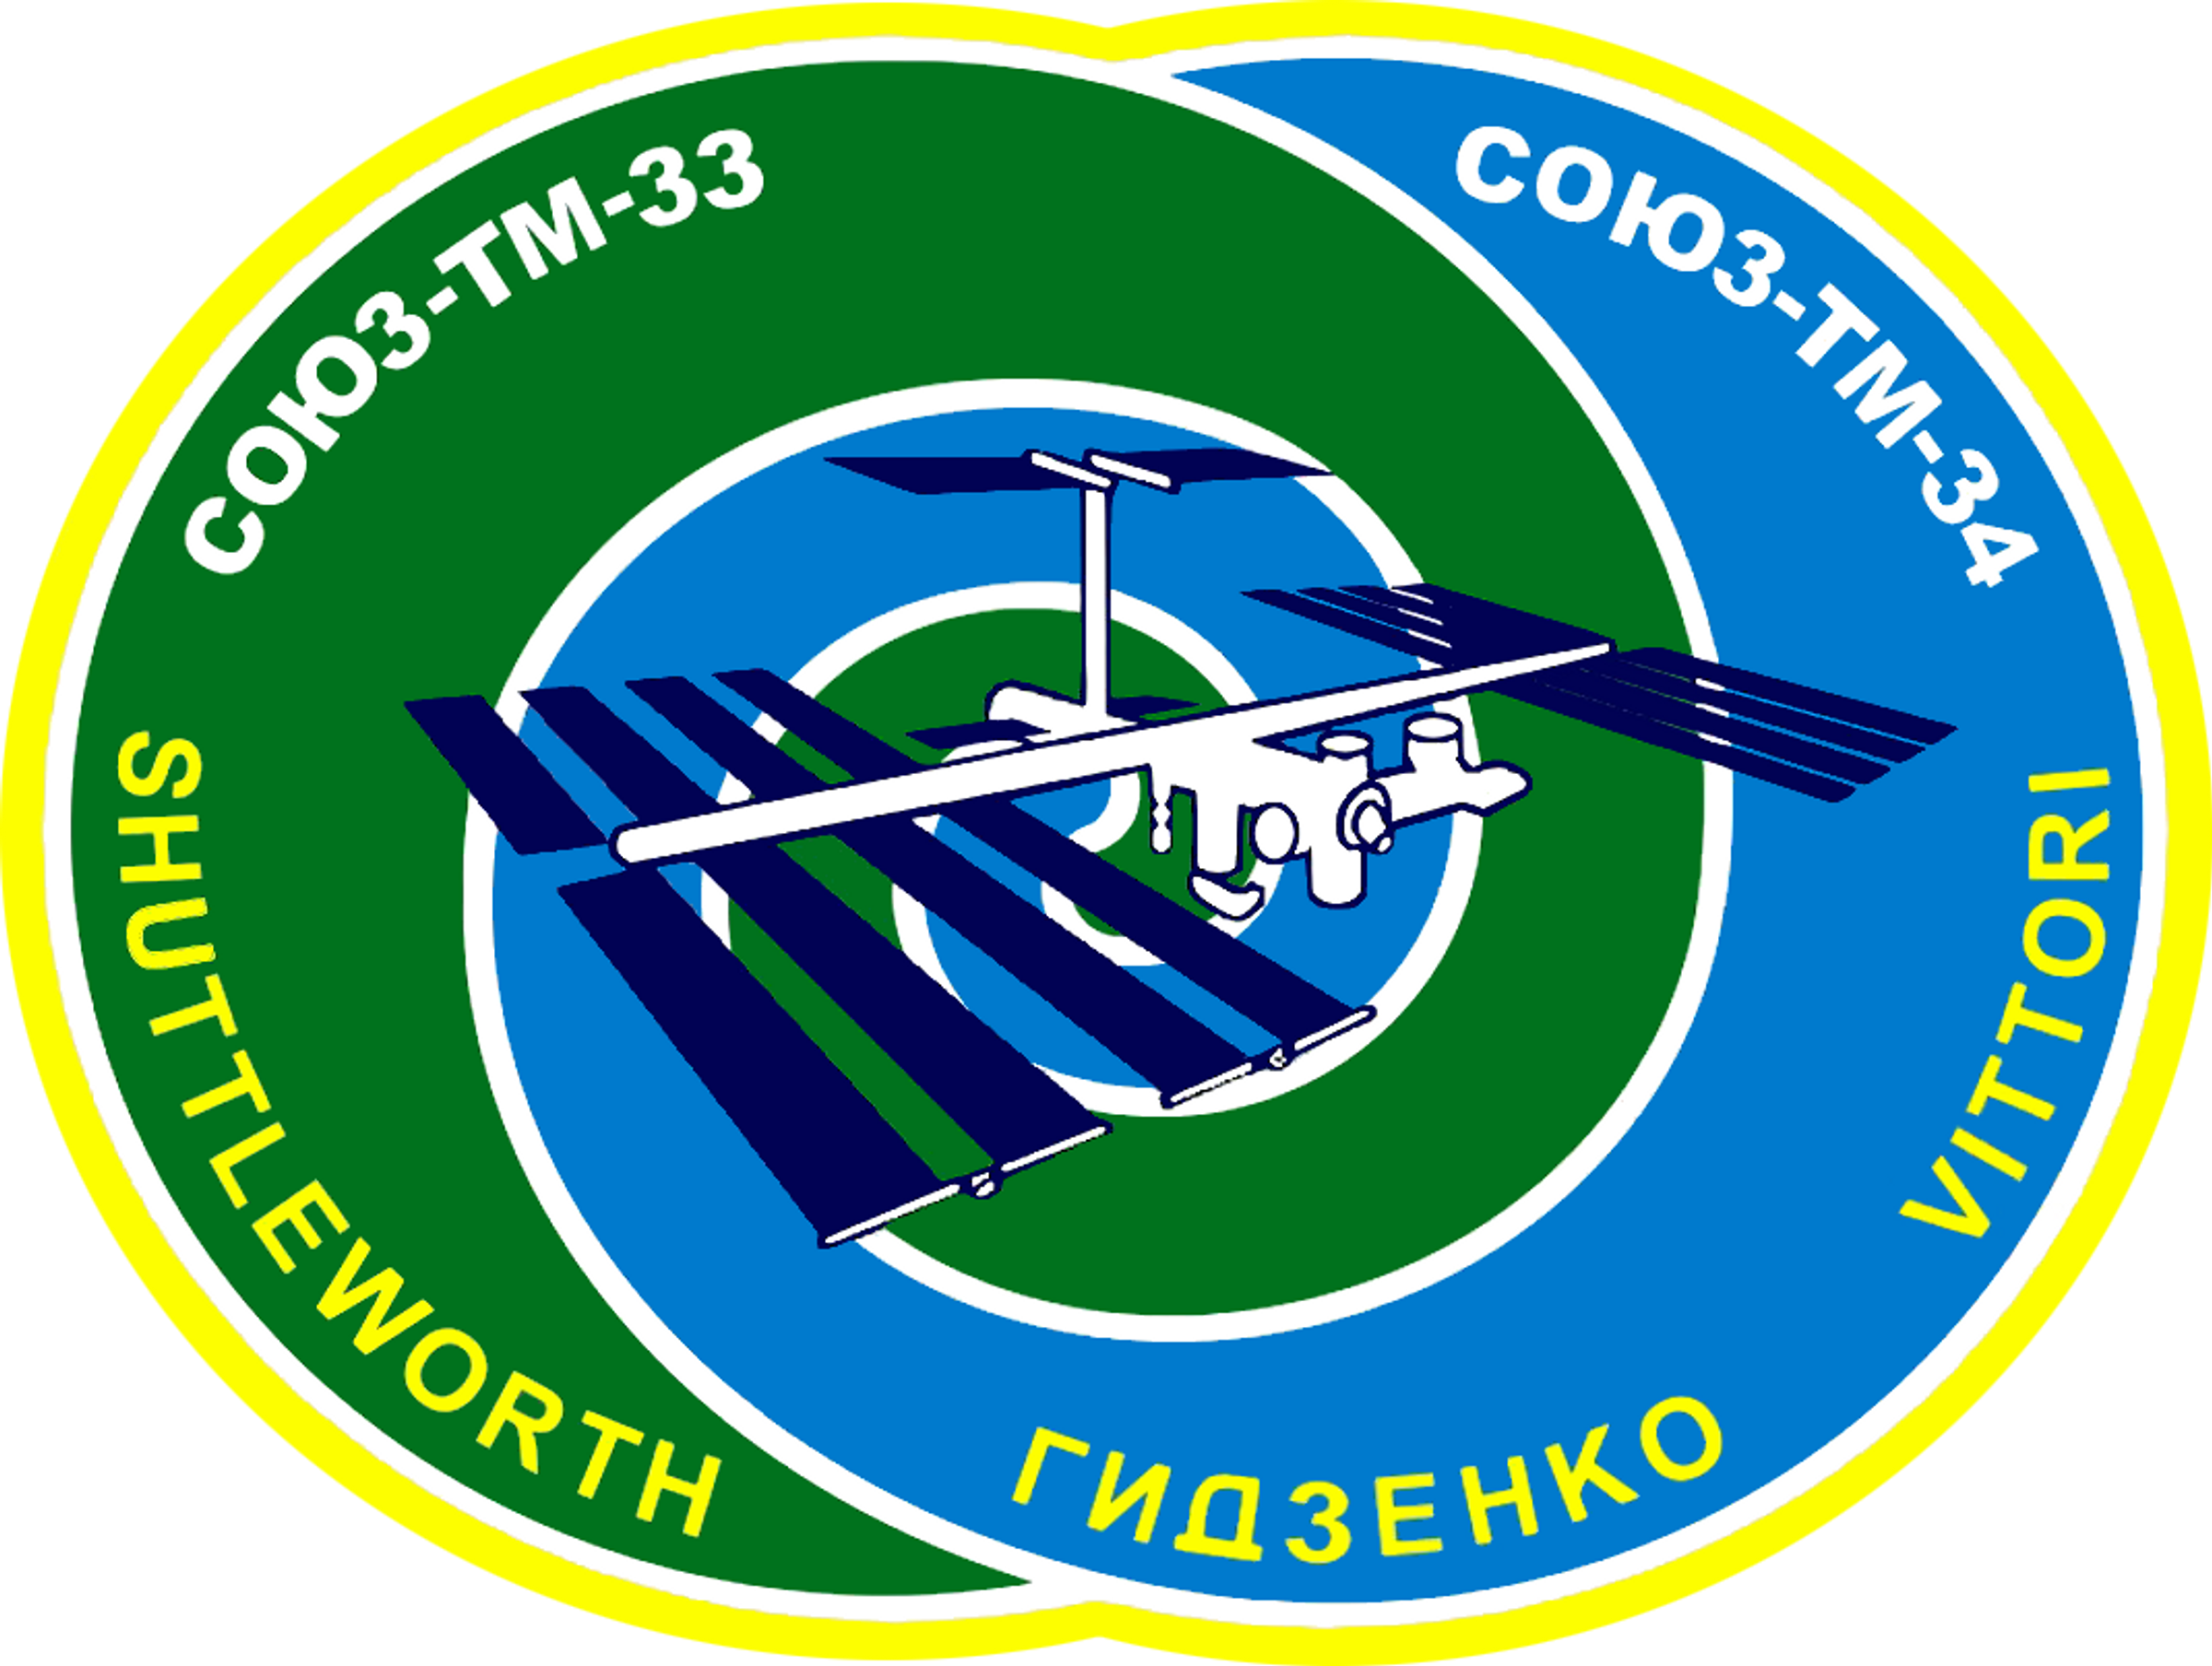 Soyuz TM-34